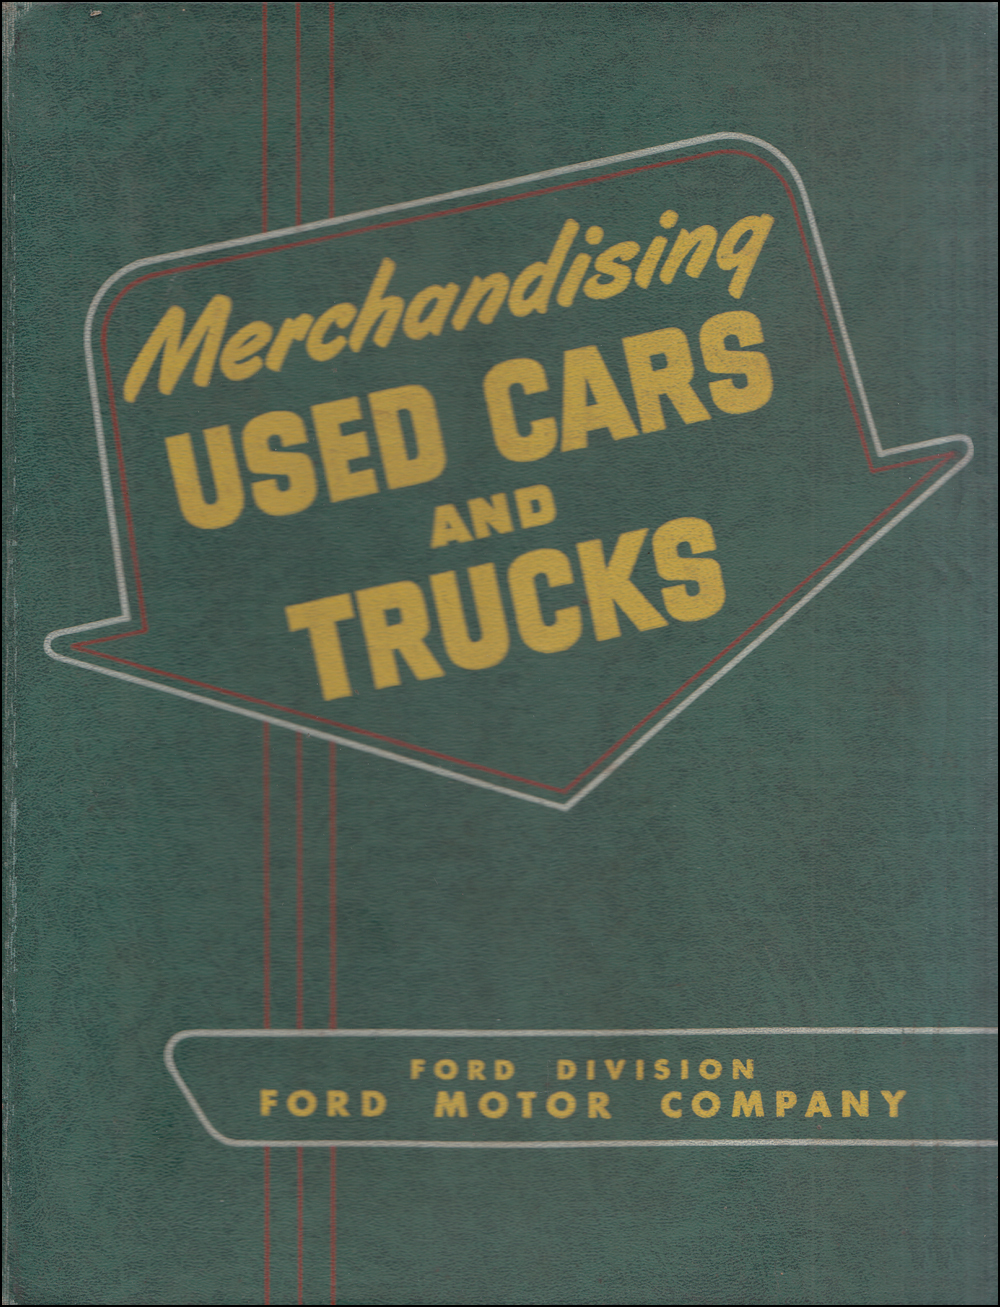 1950-1951 Ford Used Car Merchandising Dealer Album Original